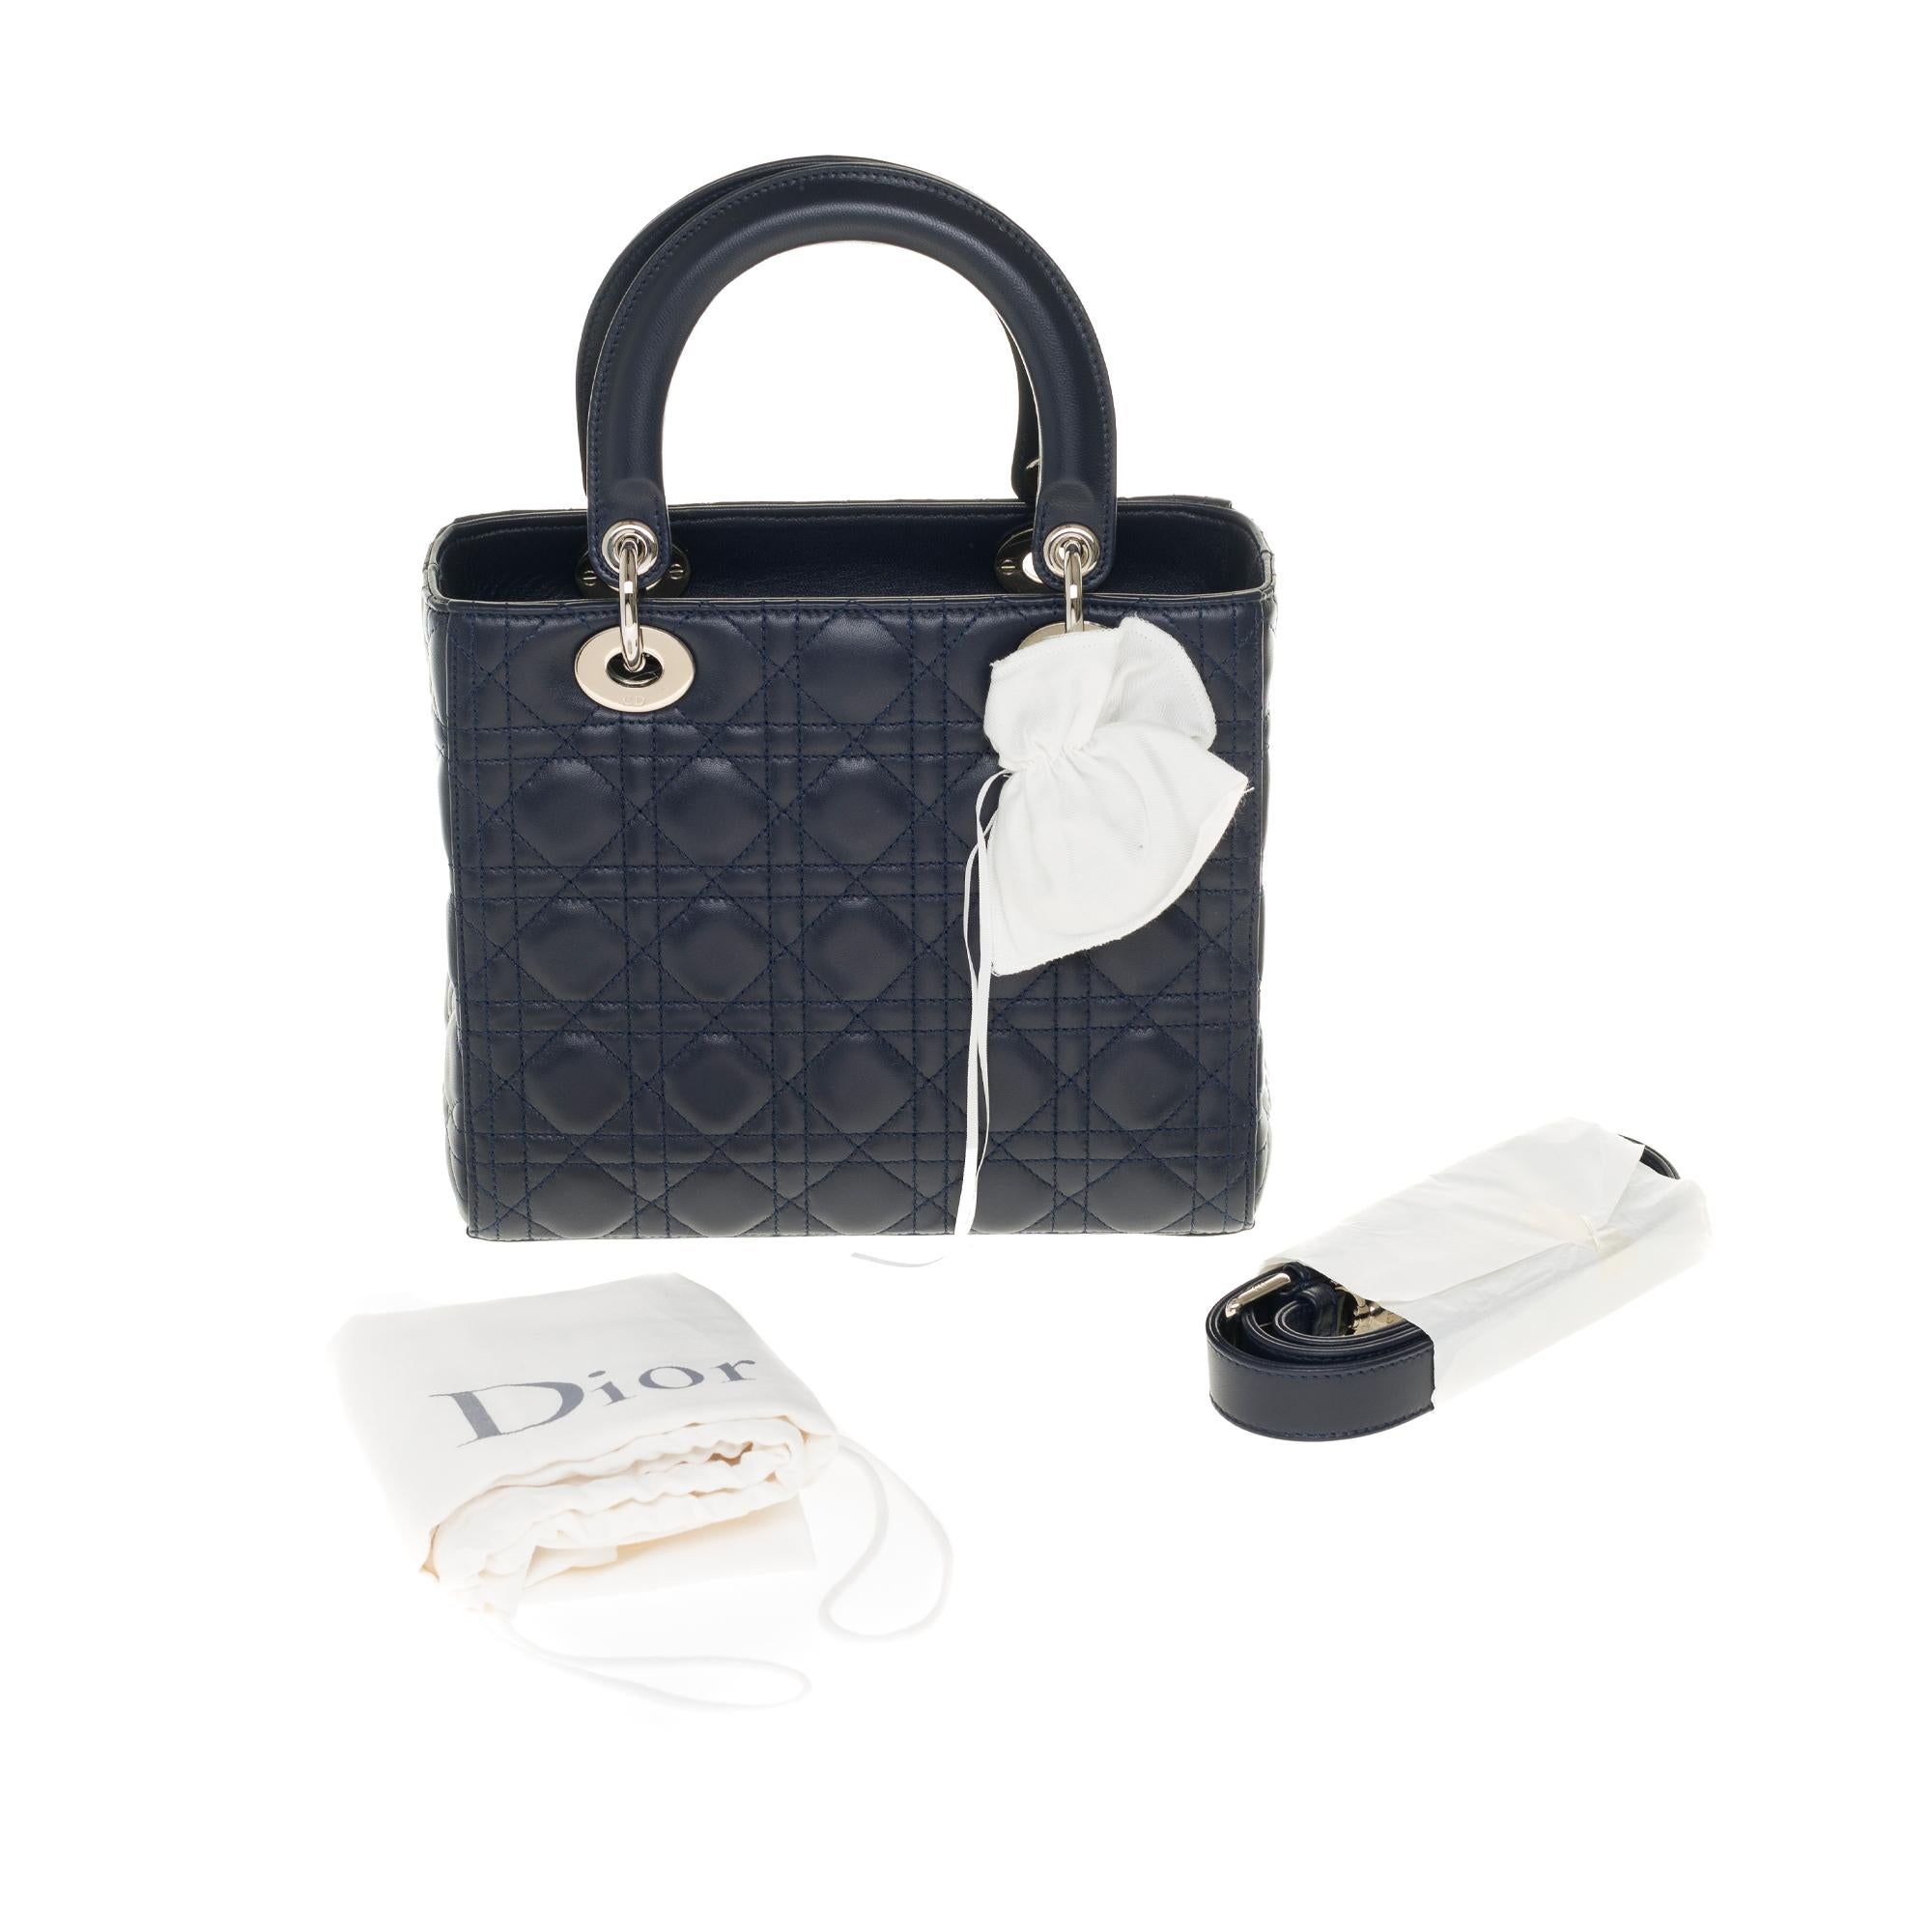  Christian Dior Lady Dior MM (Medium size) handbag in black cannage leather, SHW 6